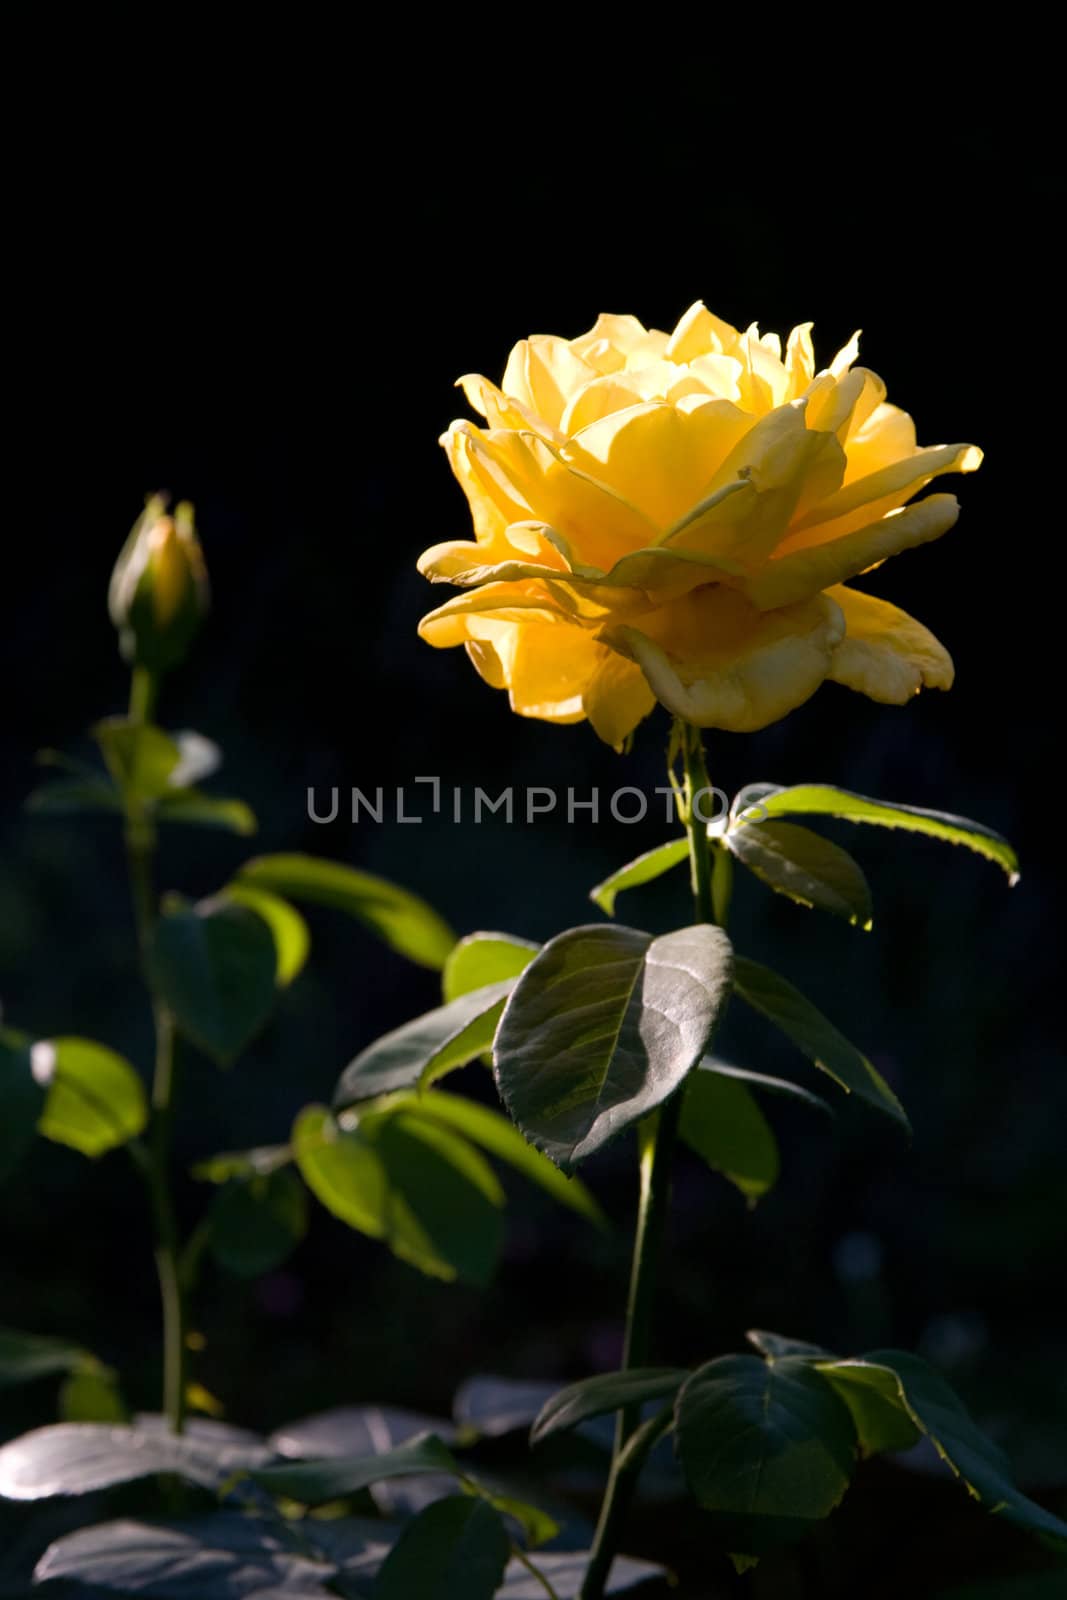 Rose in the morning light by chrisroll